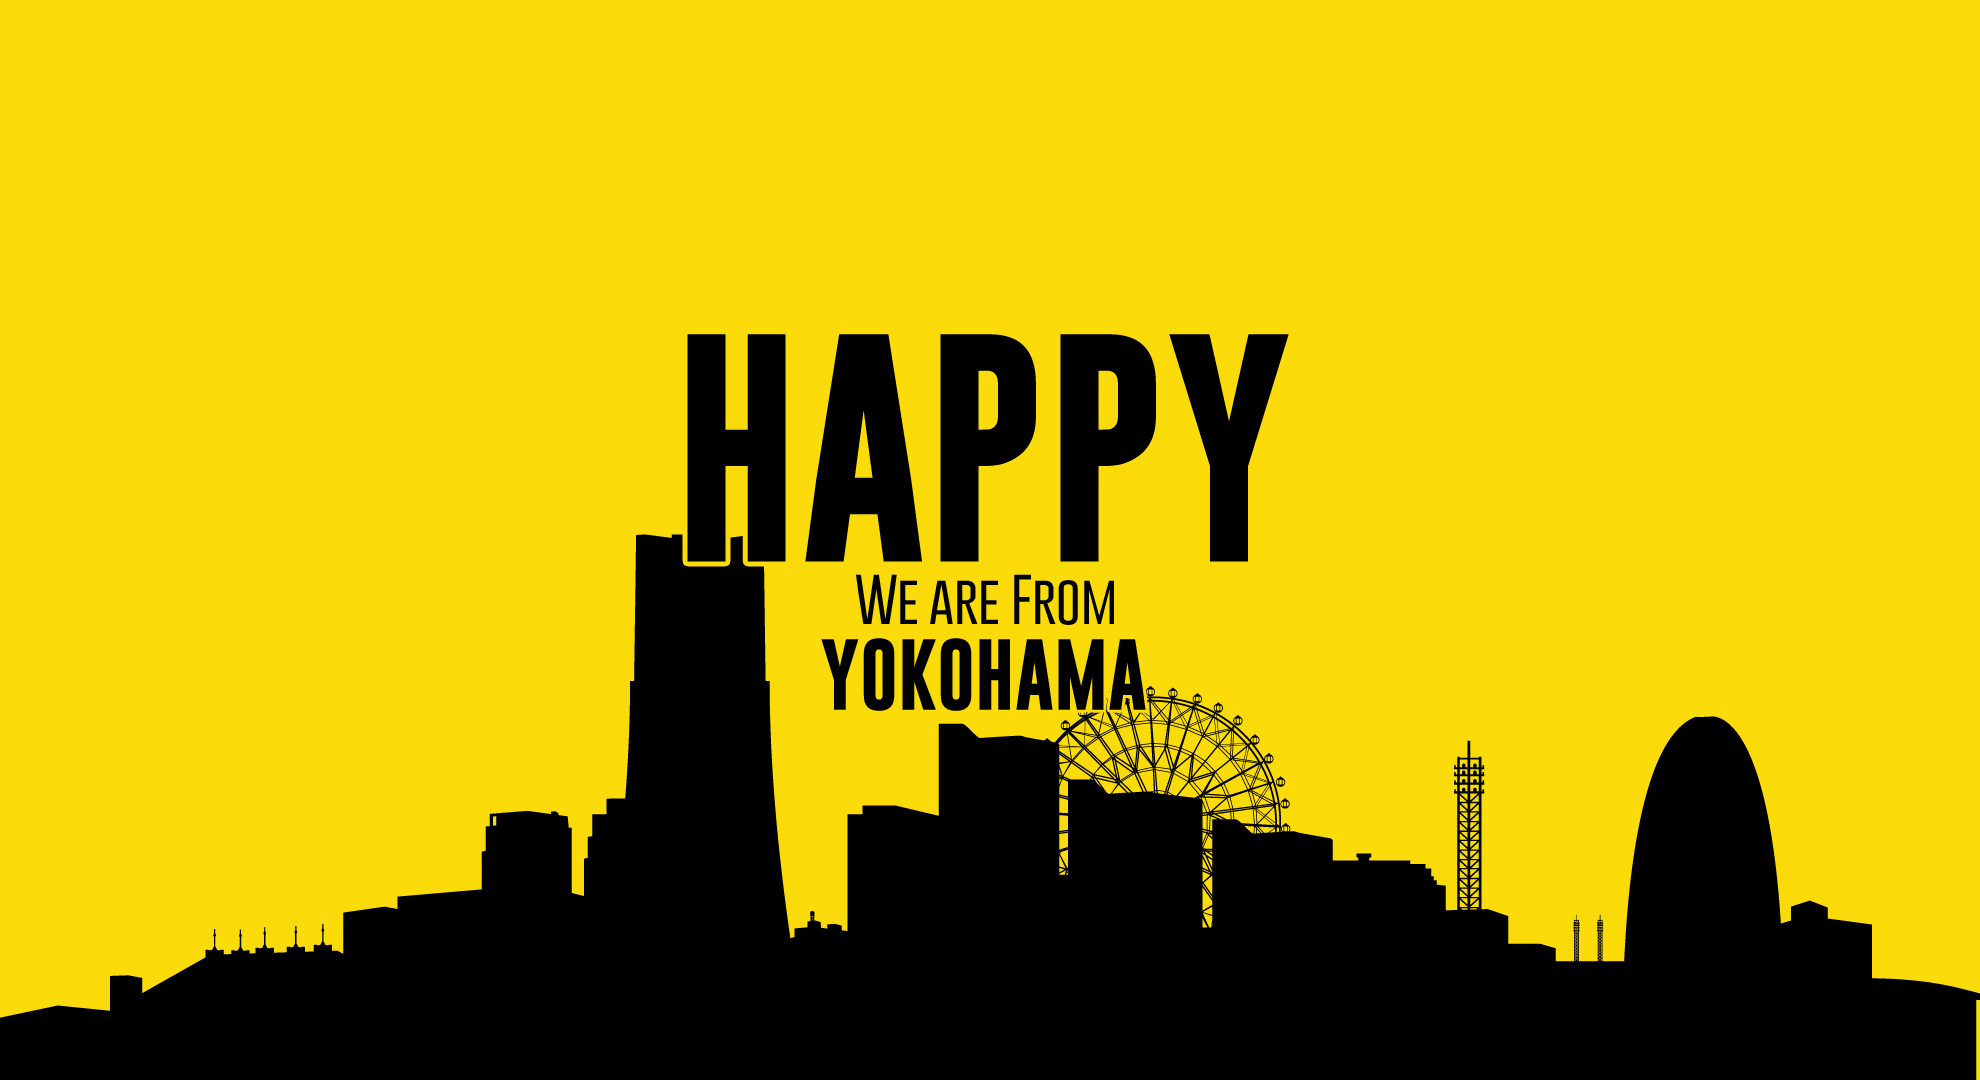 Pharrell Williams- Happy We Are From Yokohama